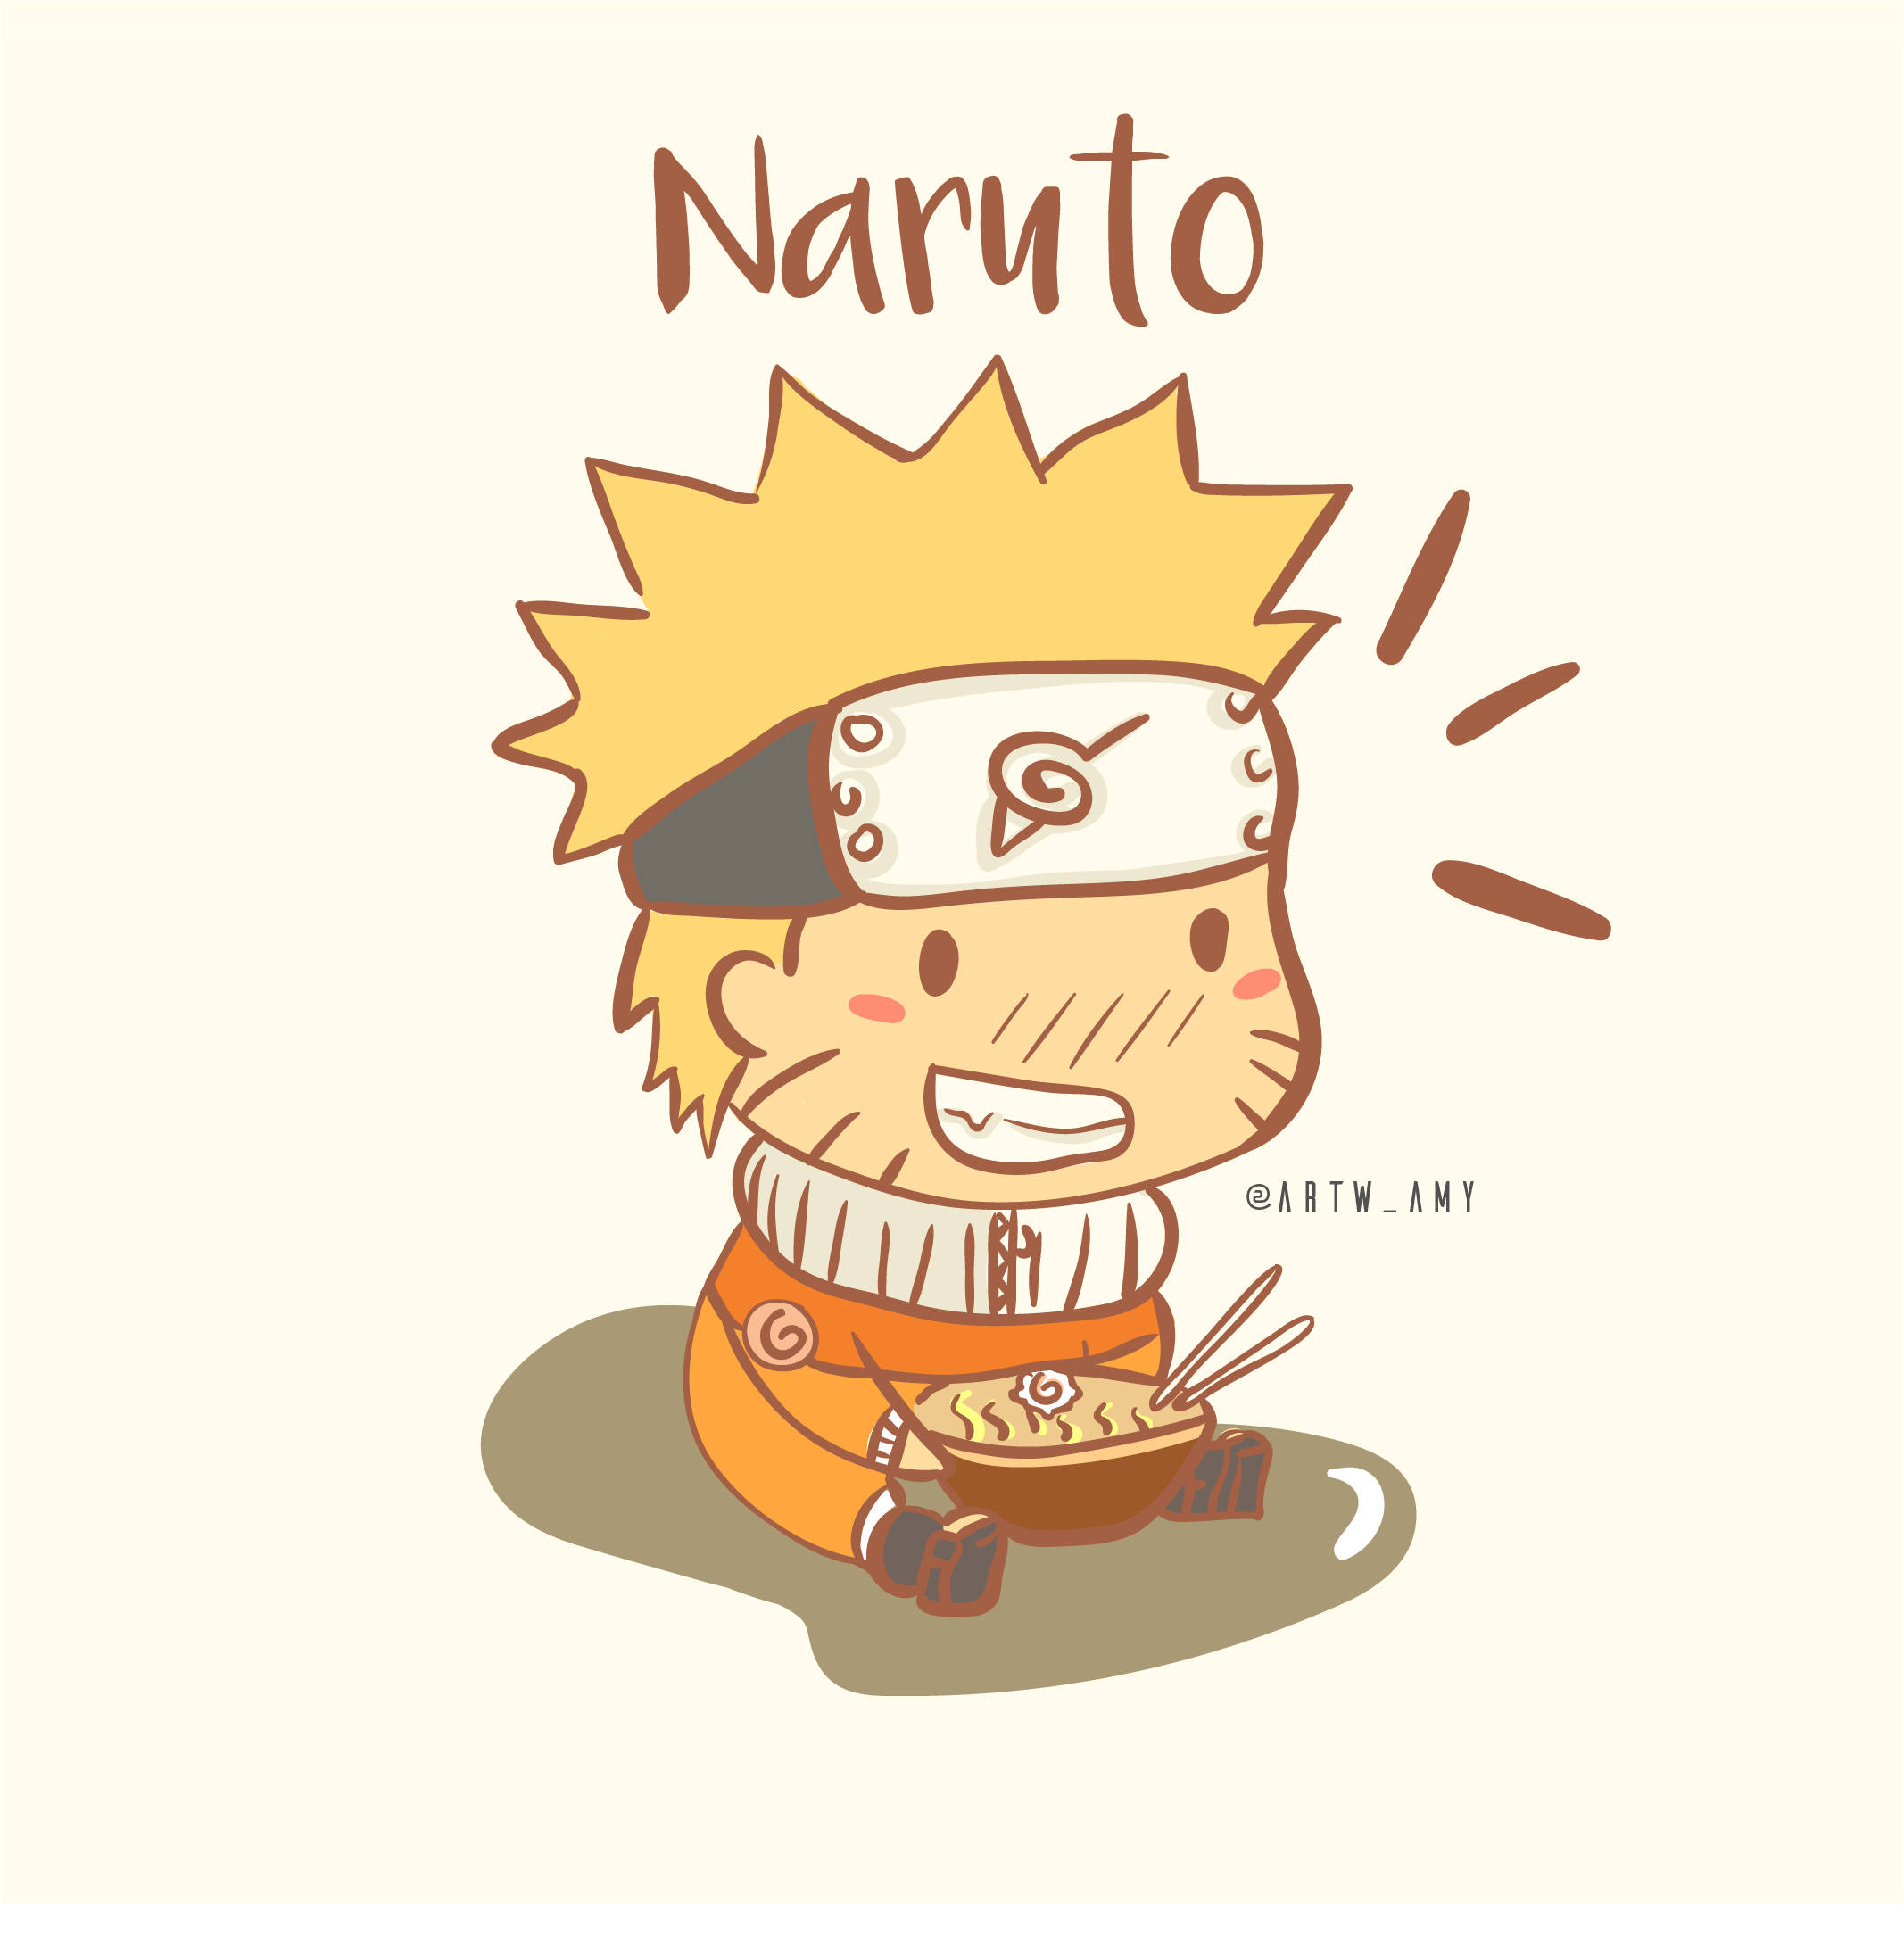 Ảnh hoạt hình Naruto chibi cute: Ảnh hoạt hình Naruto chibi cute sẽ đem lại cho bạn những cảm xúc mới lạ khi xem các nhân vật Naruto được truyền tải qua nghệ thuật hoạt hình động đáng yêu. Hãy thử tìm hiểu về Naruto chibi để tăng thêm niềm đam mê của bạn.